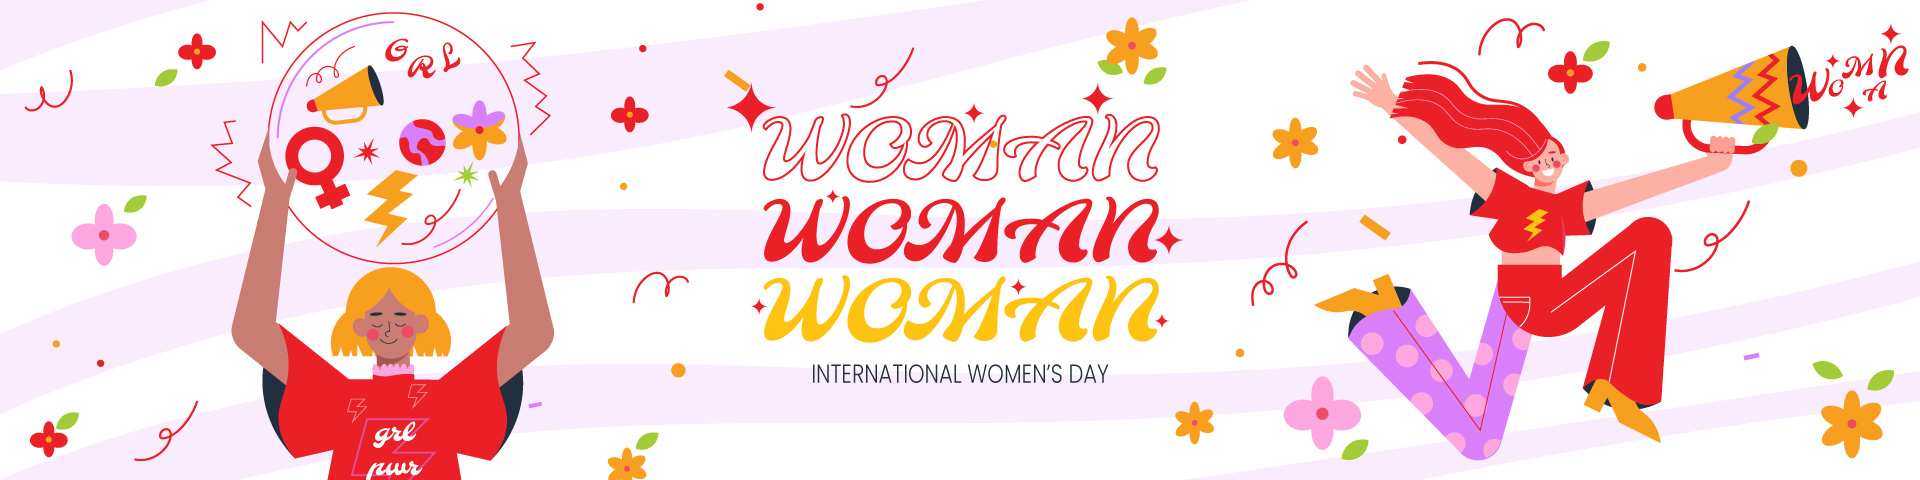 https://www.ecardmax.com/ecardmaxdemo/banners/woman.jpg